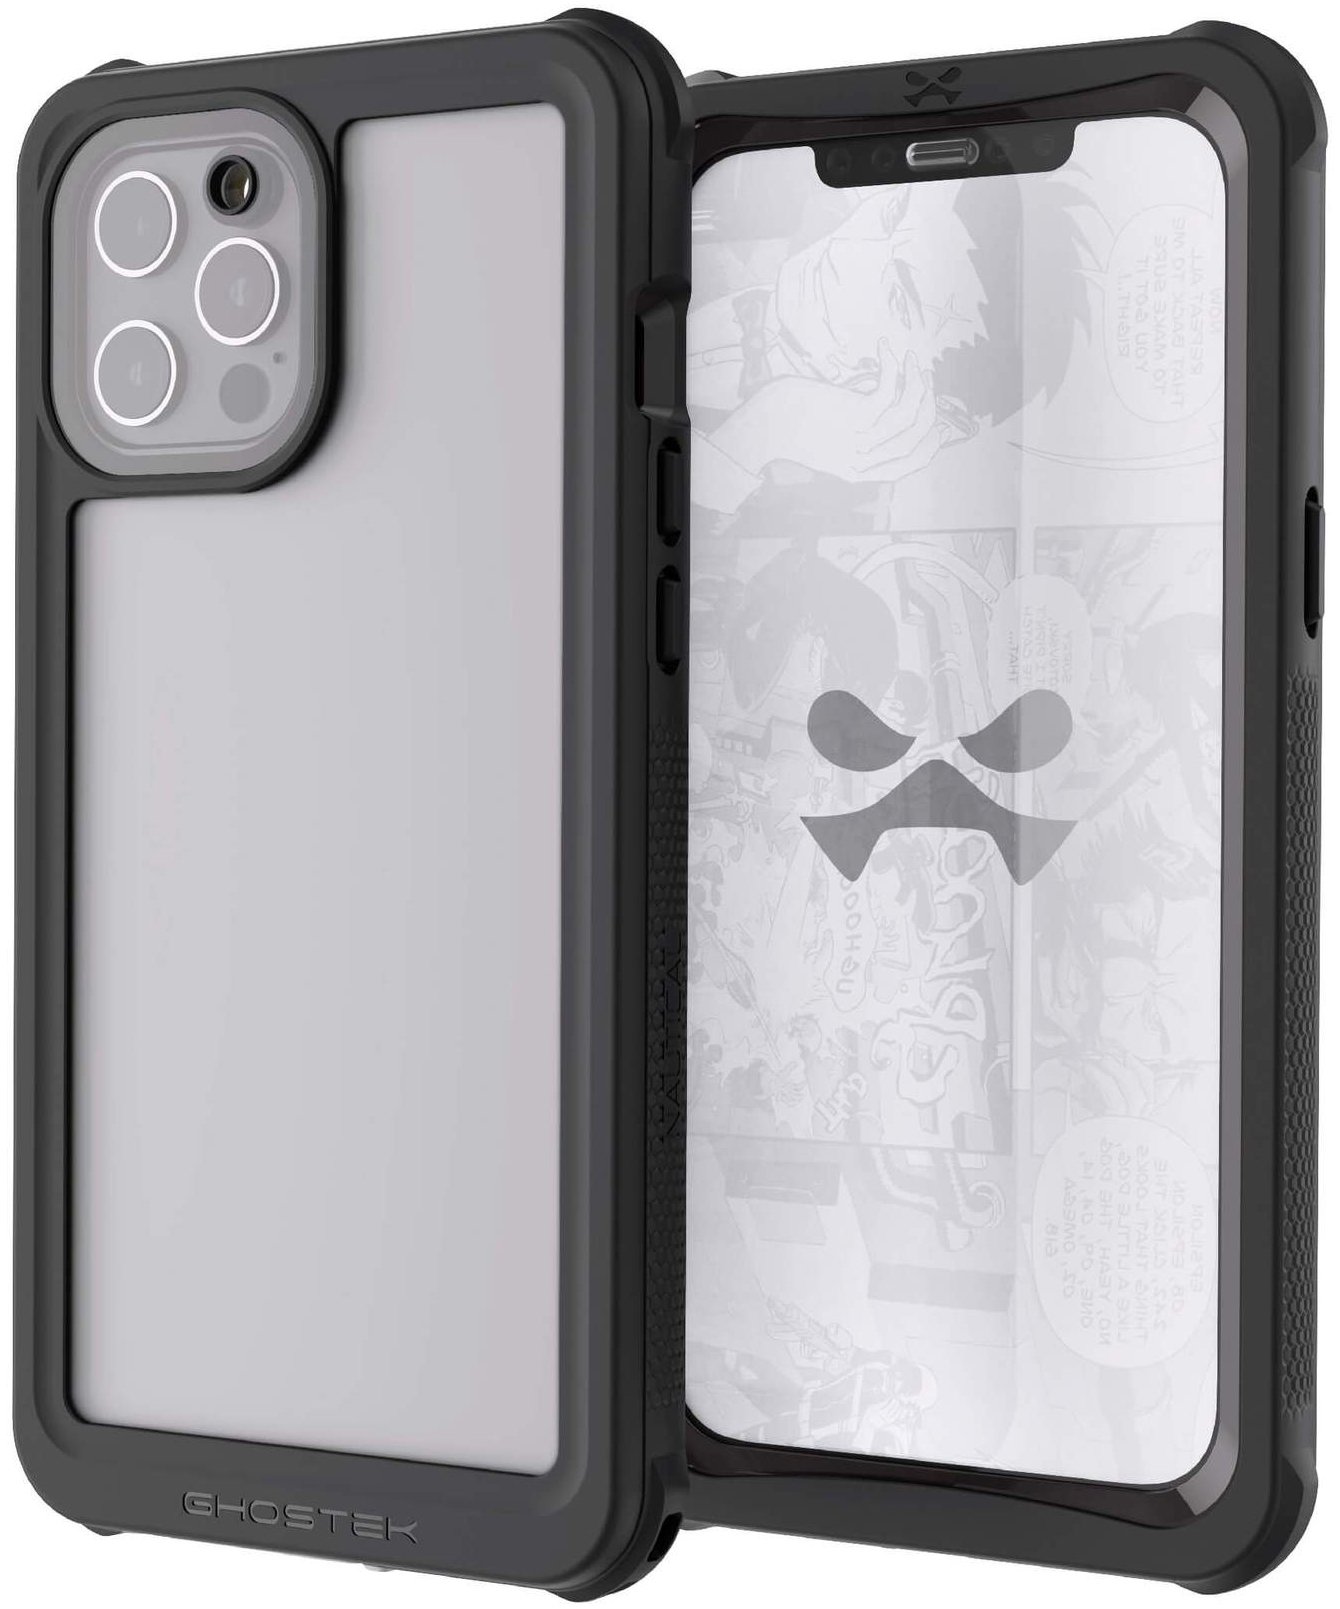 Ghostek Iphone 12 Pro Max   Waterproof Case